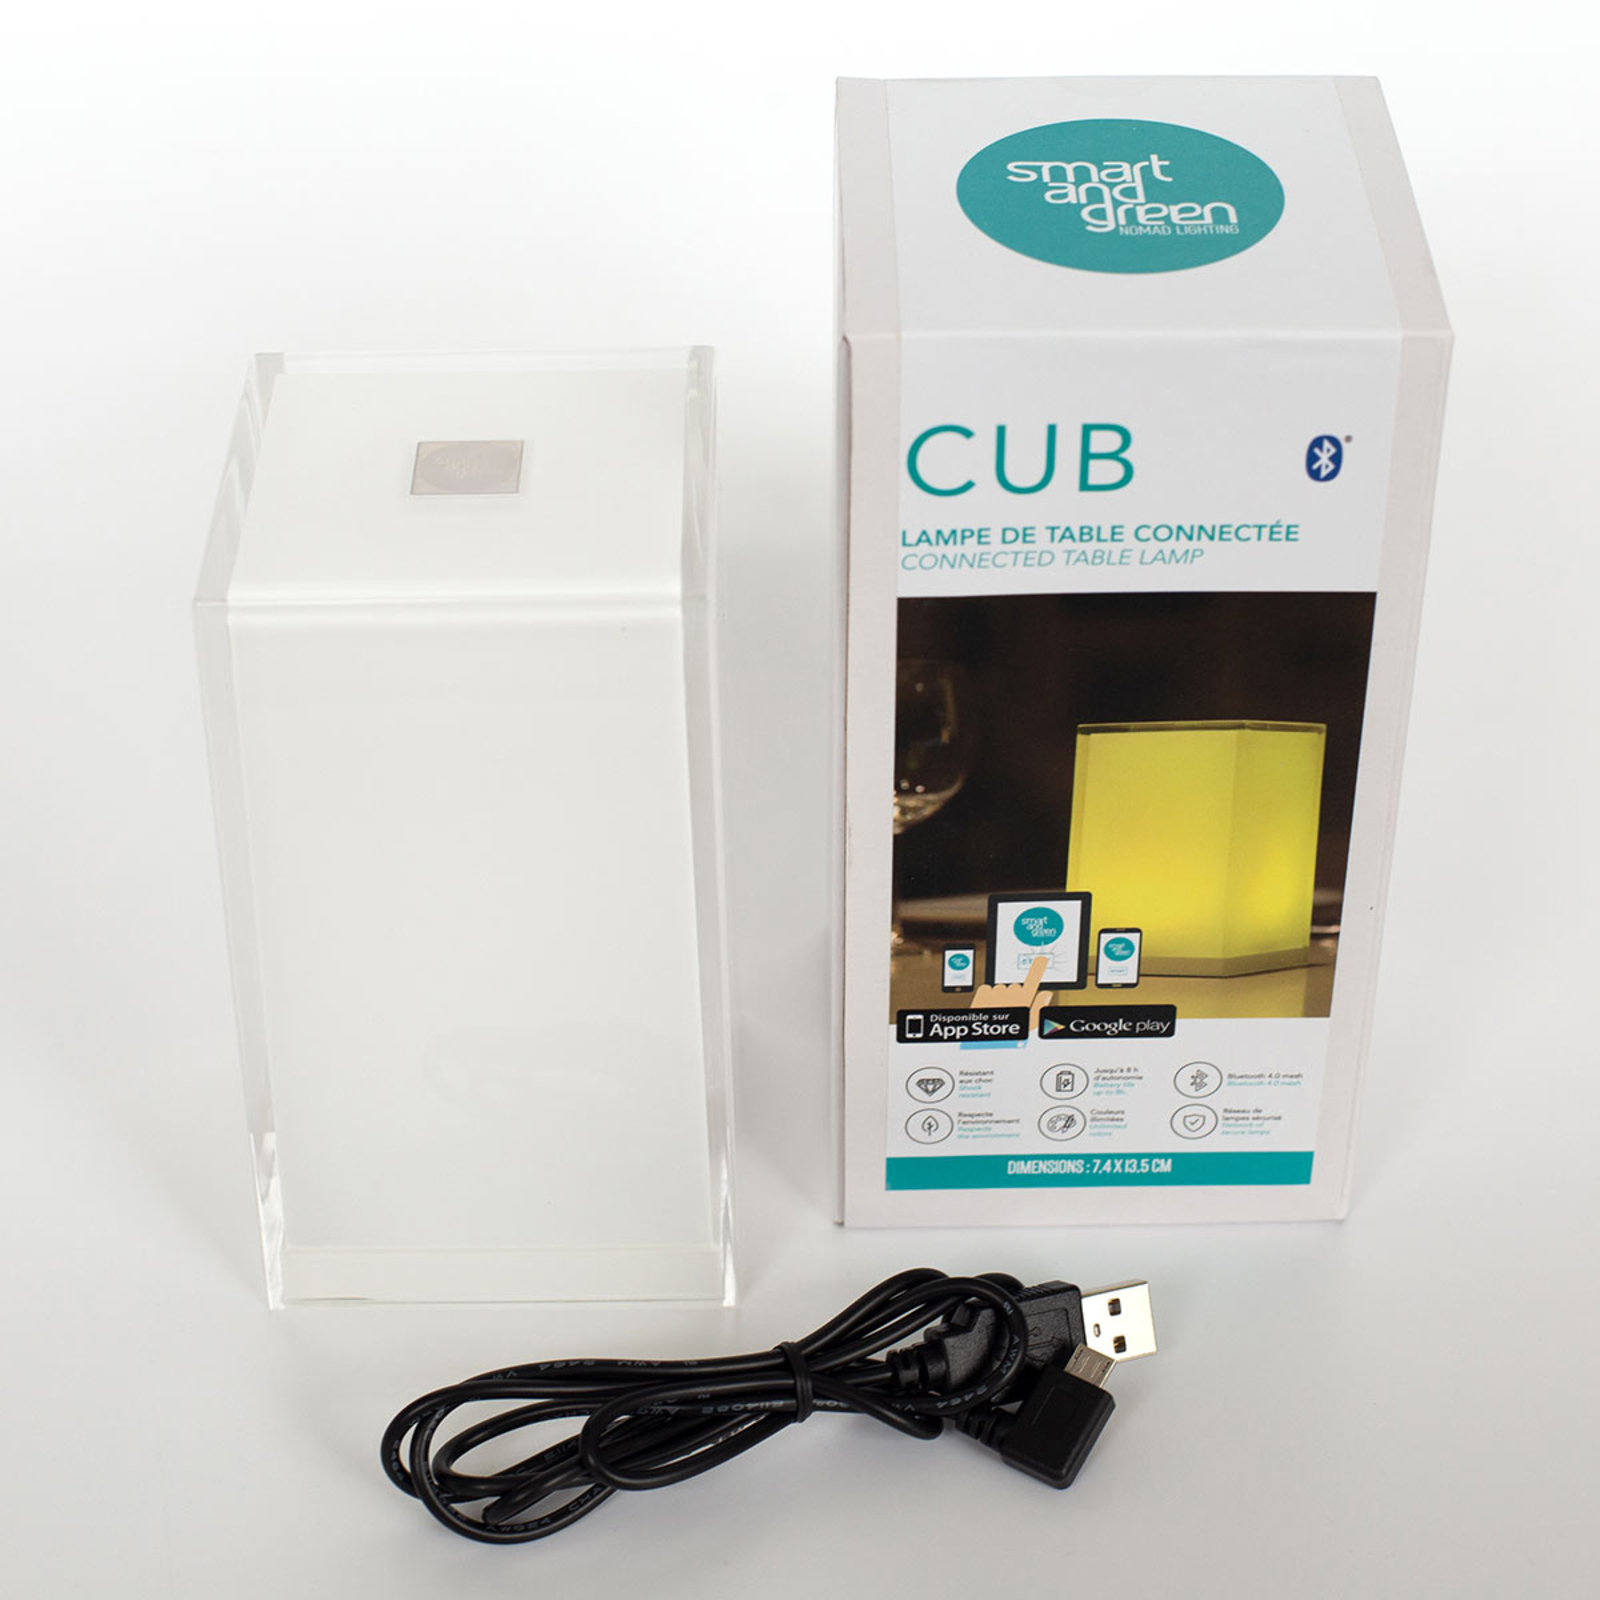 Přenosná stolní lampa Cub, ovládaná aplikací, RGBW